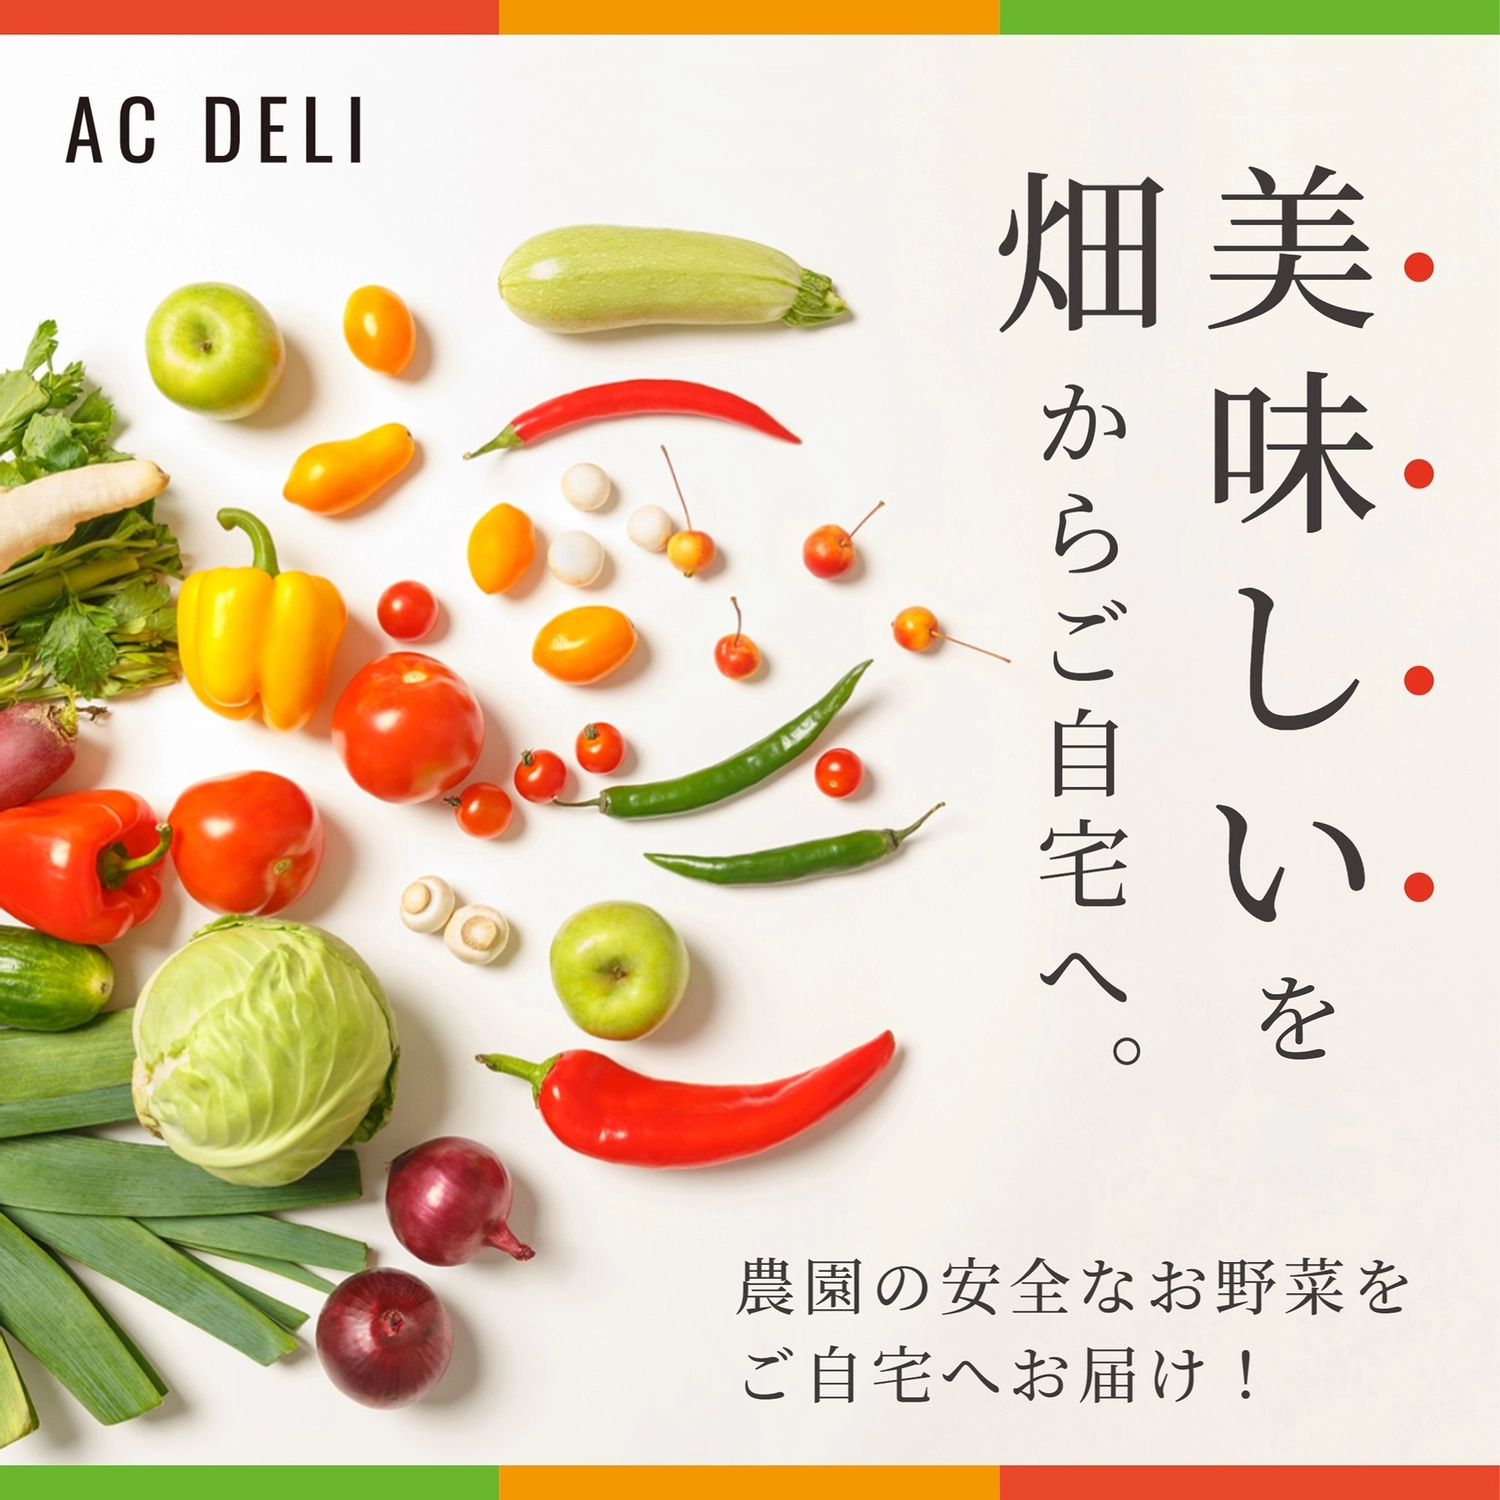 宅配野菜の広告テンプレート, 經典的, 黃色, 豐富多彩的, IG廣告 模板